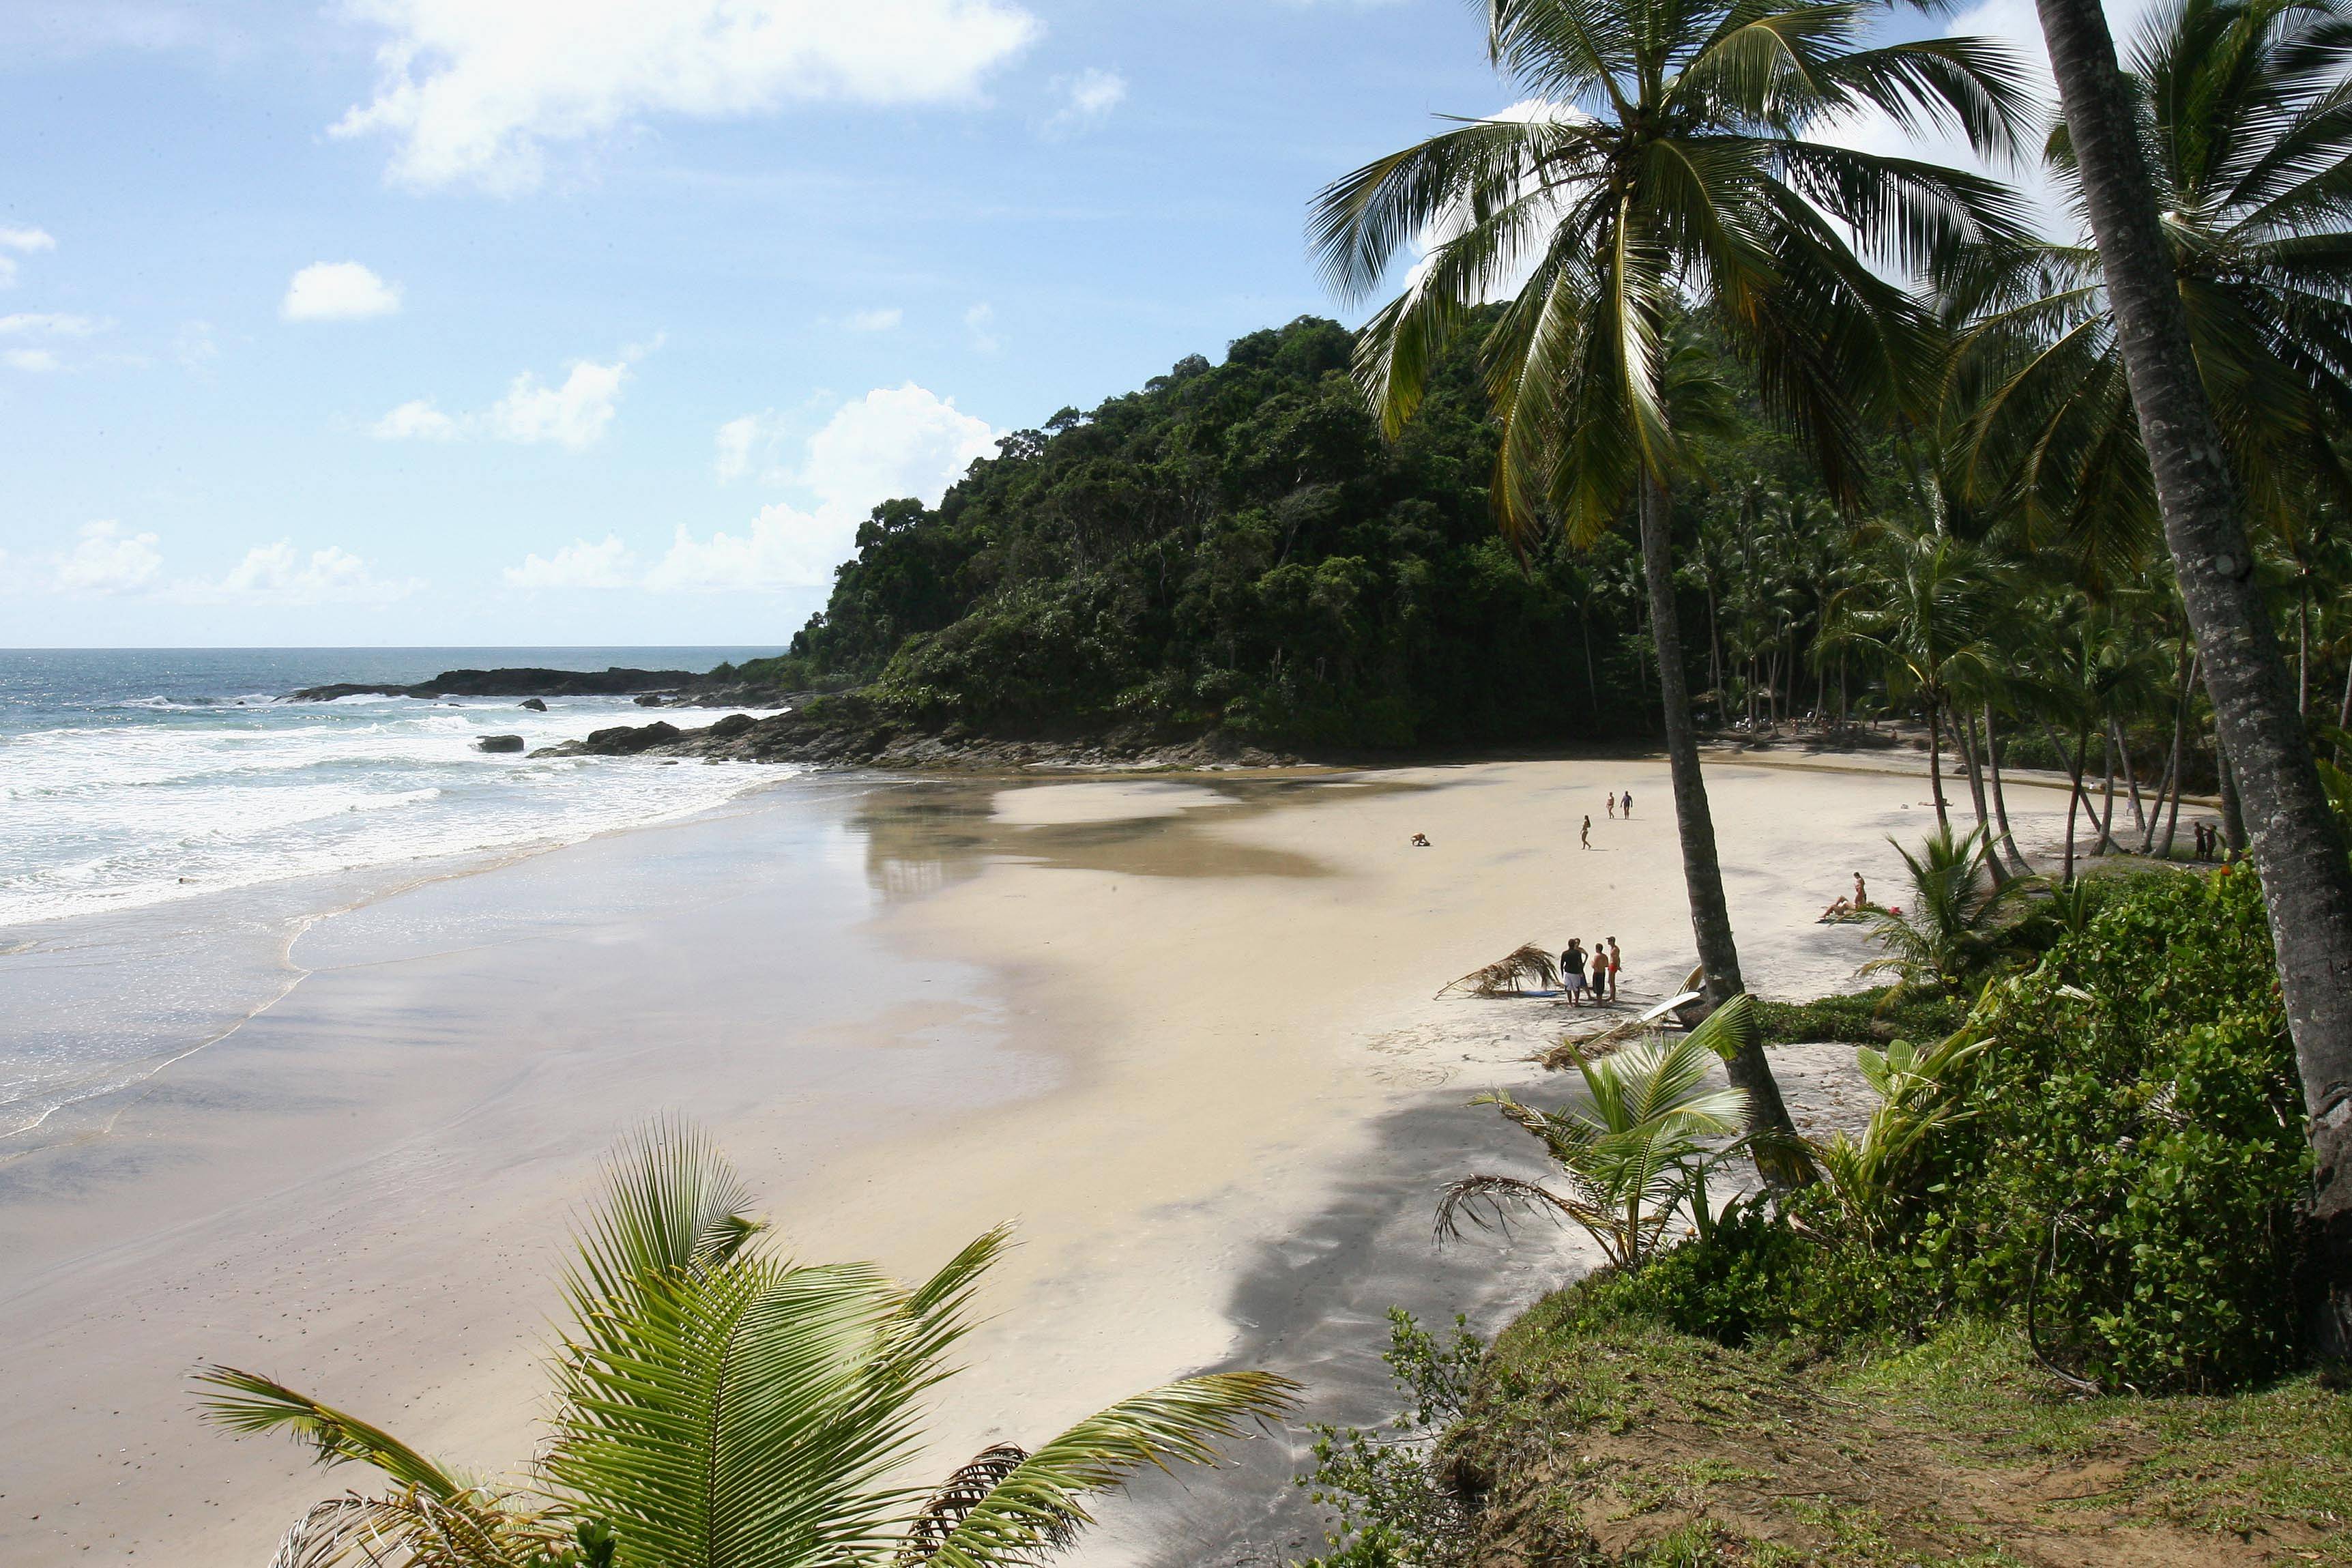 Bahia slow travel - cultura, natura e spiagge incontaminate